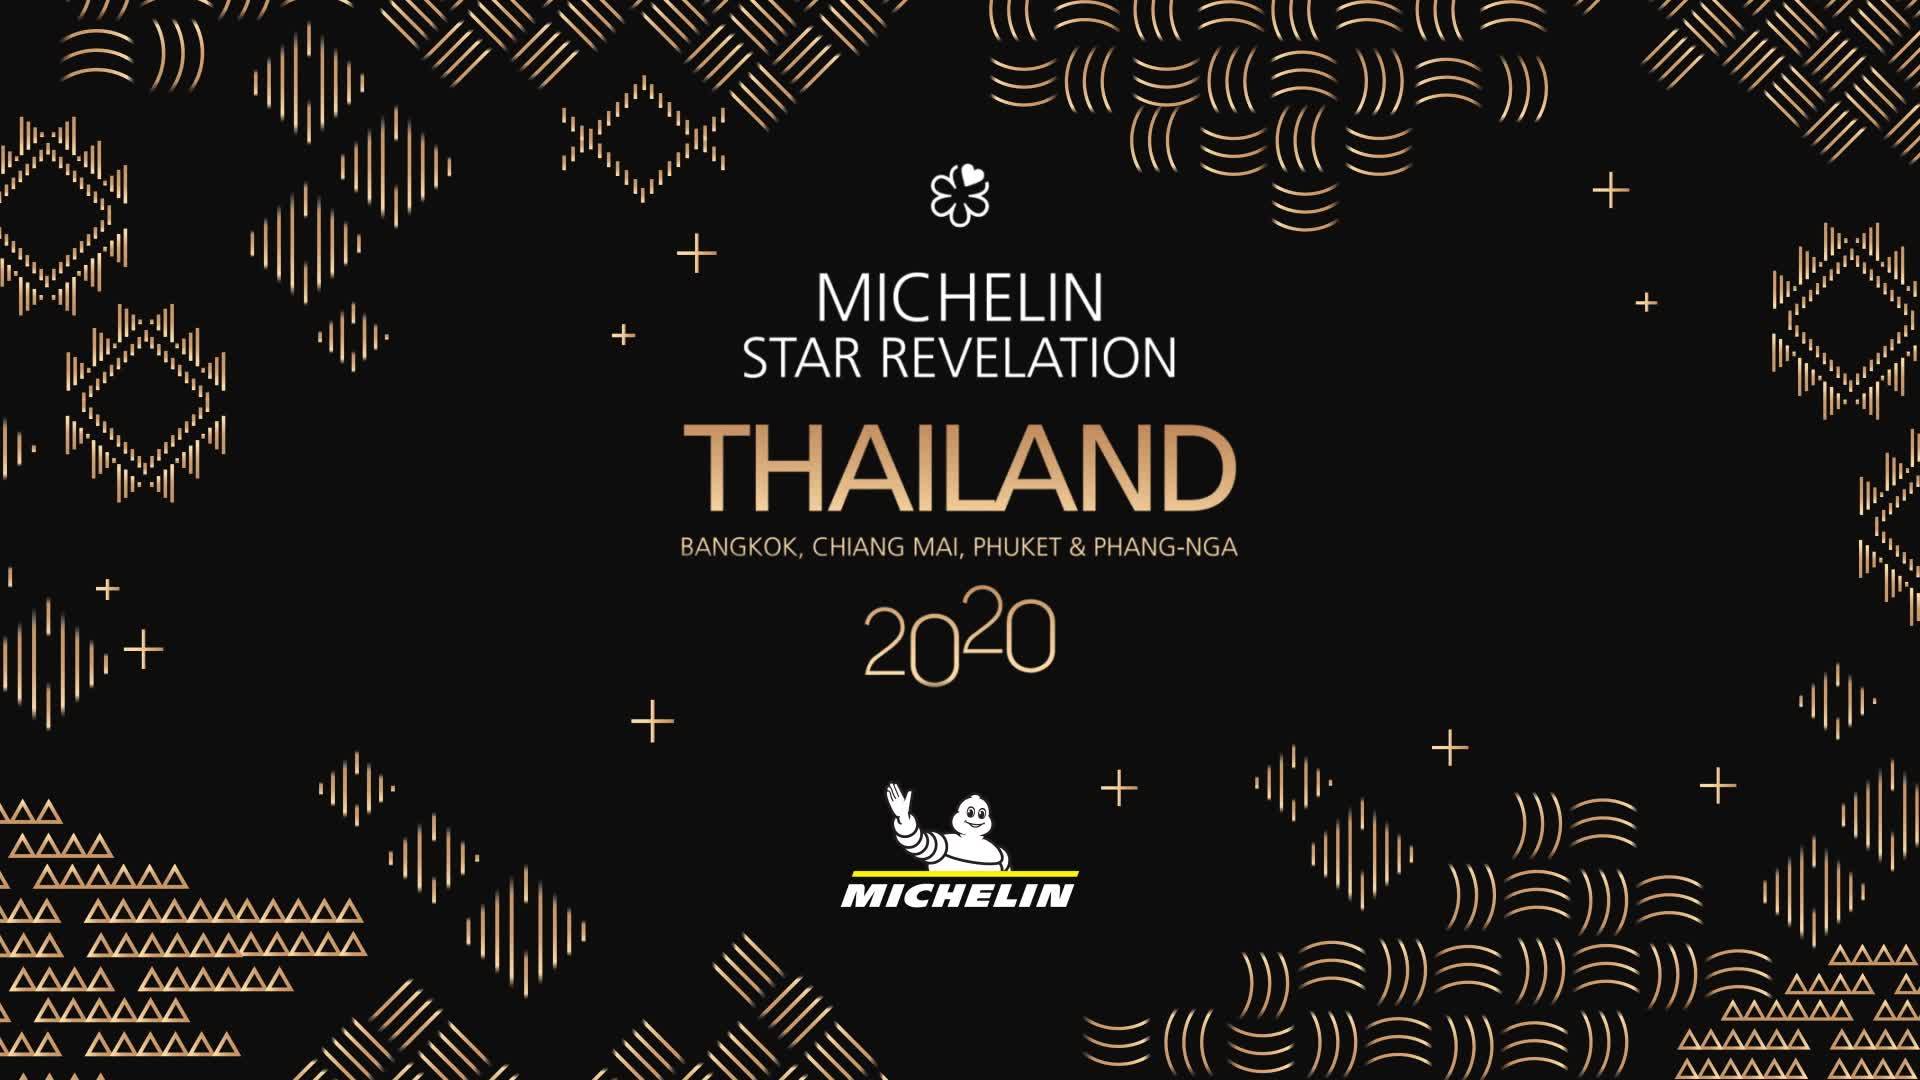 タイ,バンコク,Michelin,ミシュラン,2020,星,レストラン,飲食店,リスト,まとめ,